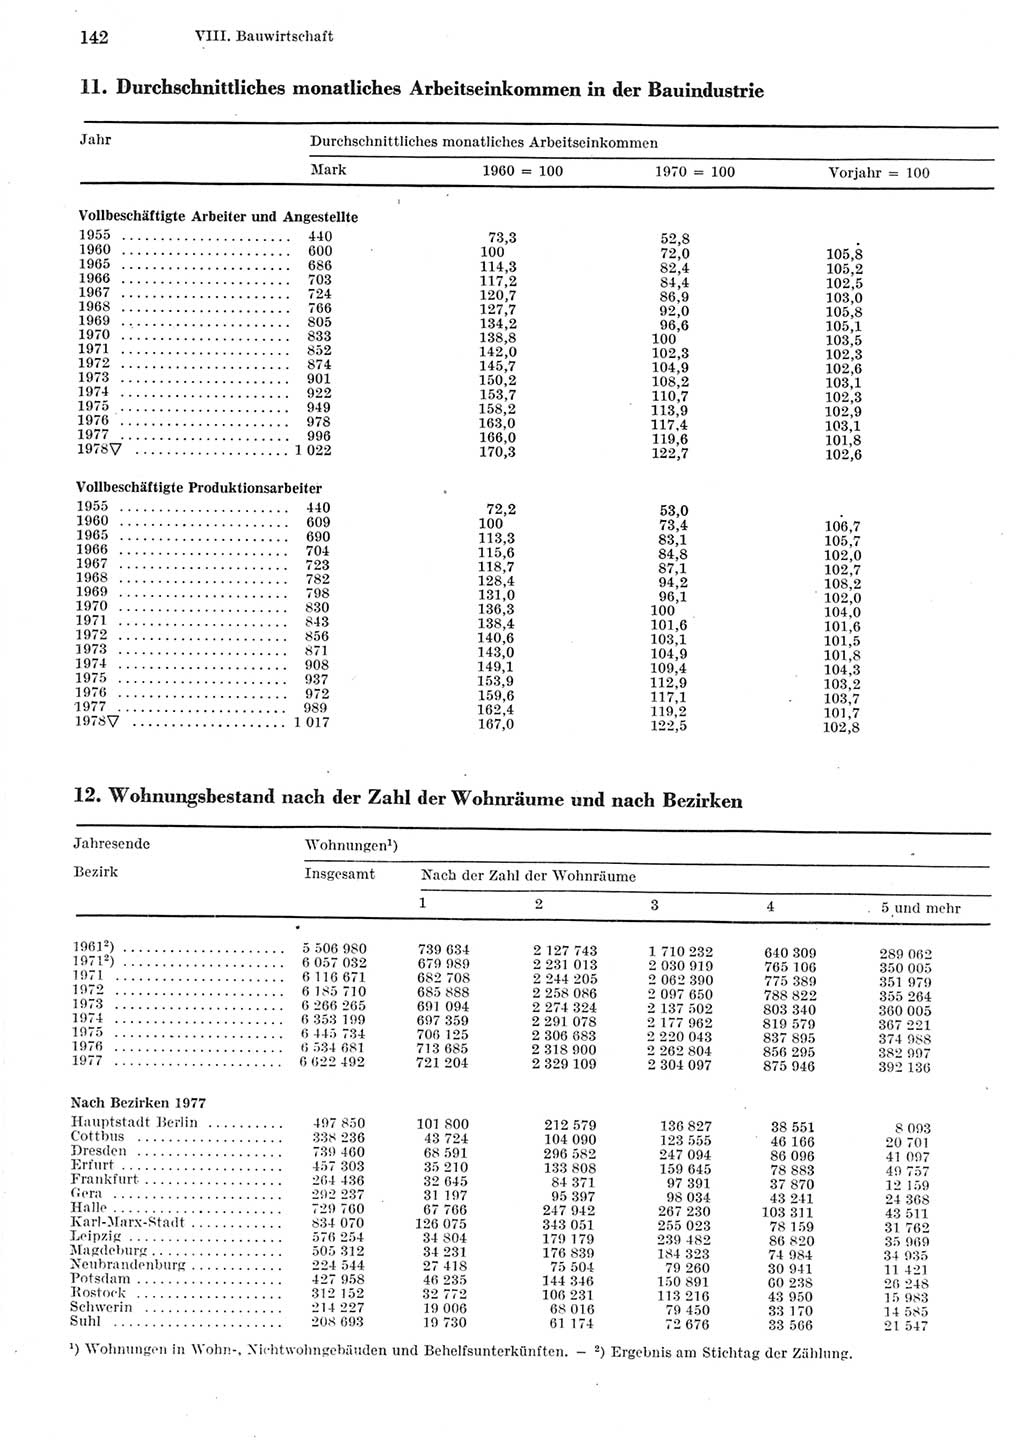 Statistisches Jahrbuch der Deutschen Demokratischen Republik (DDR) 1979, Seite 142 (Stat. Jb. DDR 1979, S. 142)